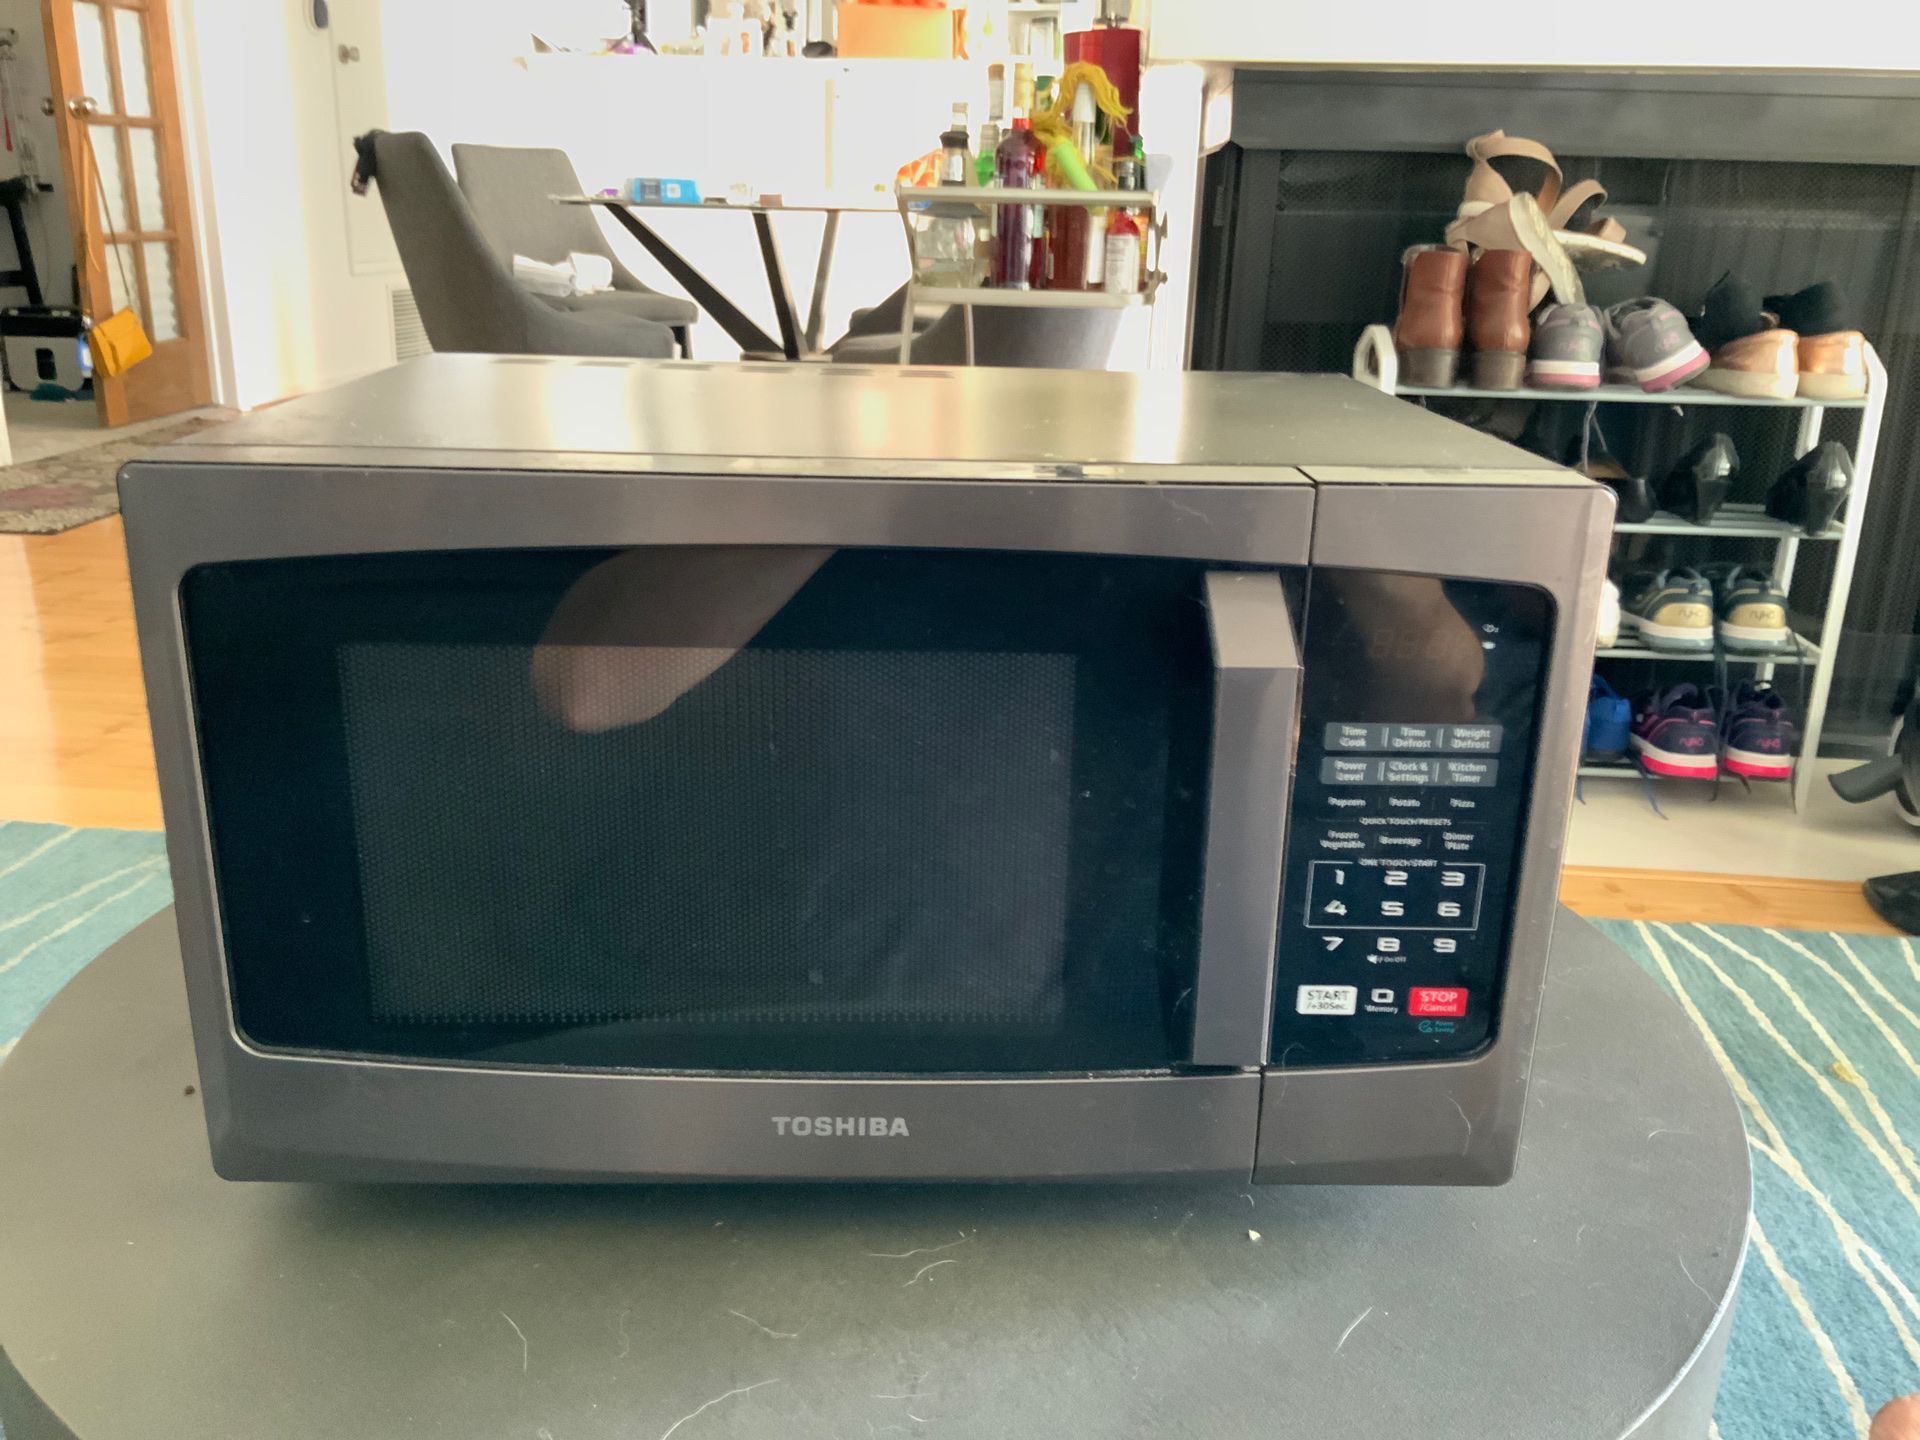 Toshiba EM925A5A-BS 0.9 cu ft 900W microwave